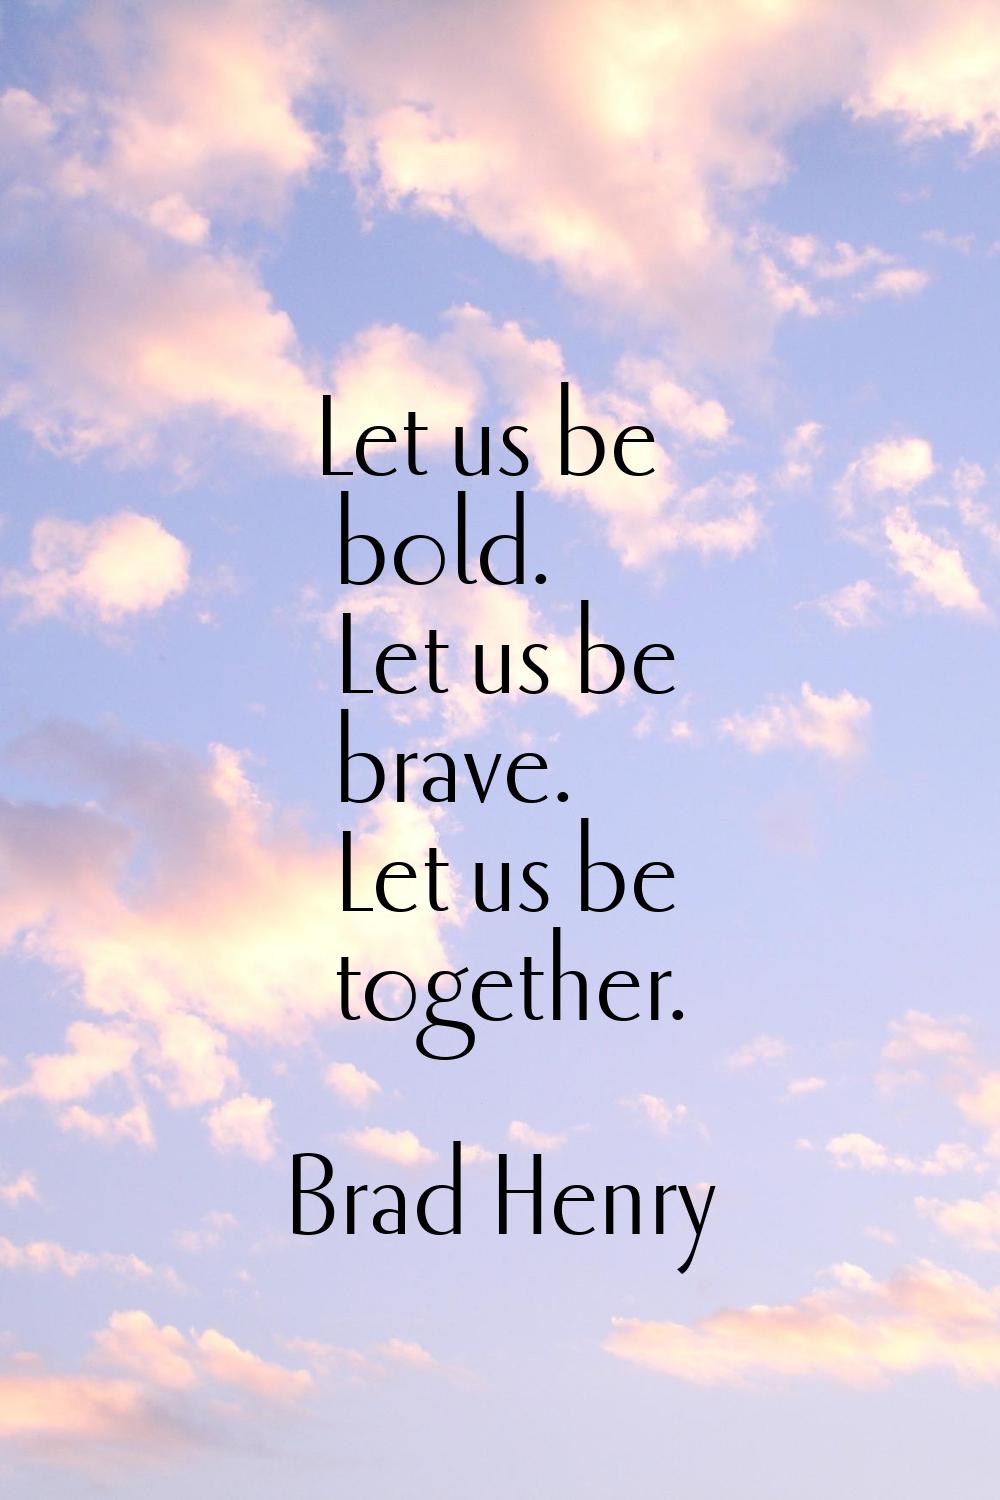 Let us be bold. Let us be brave. Let us be together.